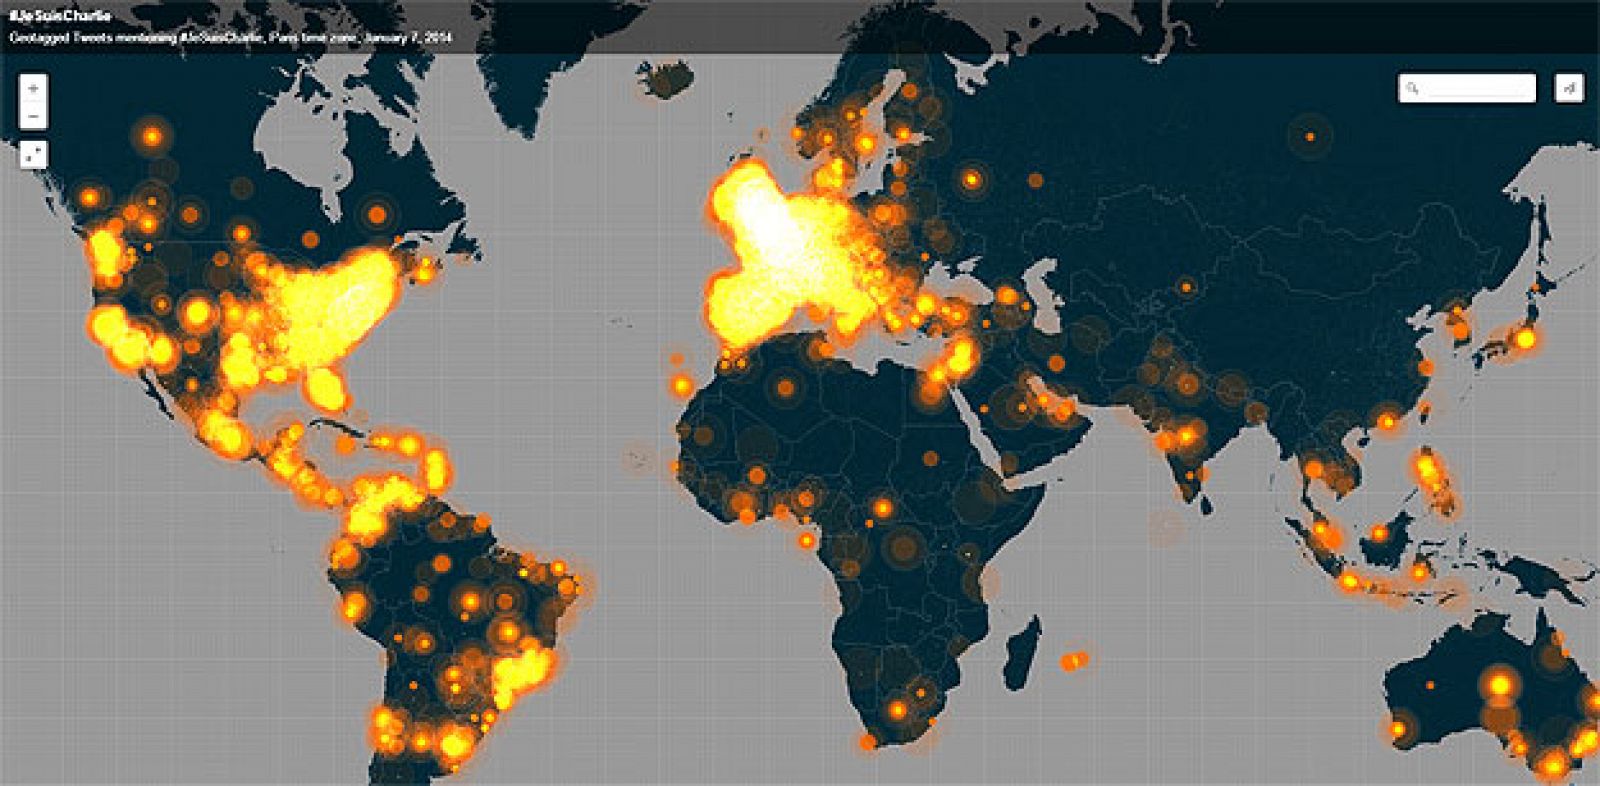 Mapa sobre el impacto del hashtag #JeSuisCharlie en Twitter